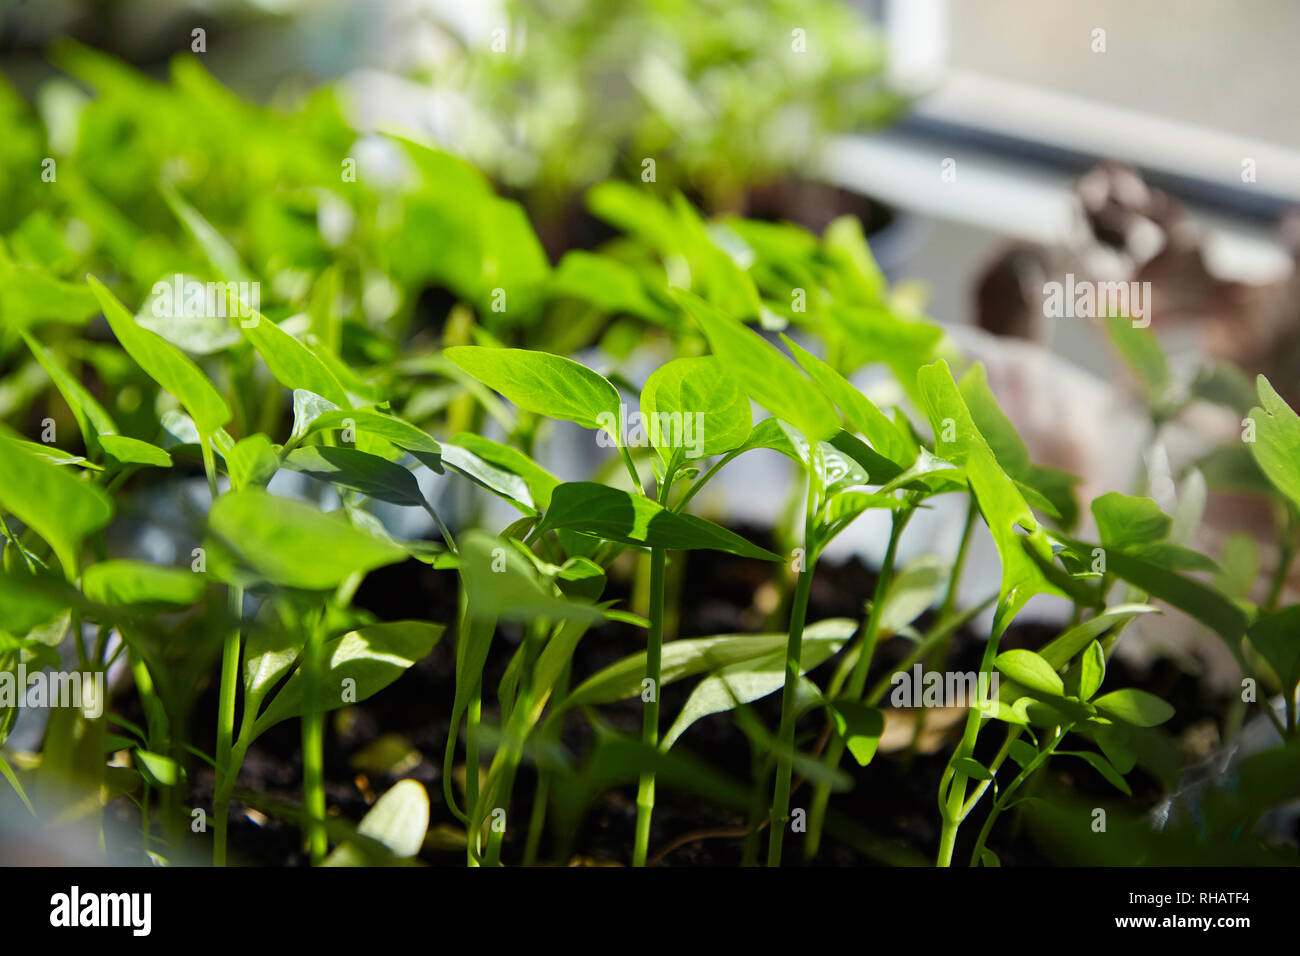 Sämling von Paprika. Junge grüne Paprika mit Blätter wachsen Pflanzen aus Samen im Boden in Kästen auf Fensterbänke Innen. Topfpflanzen Paprika Keimlinge Grün Le Stockfoto